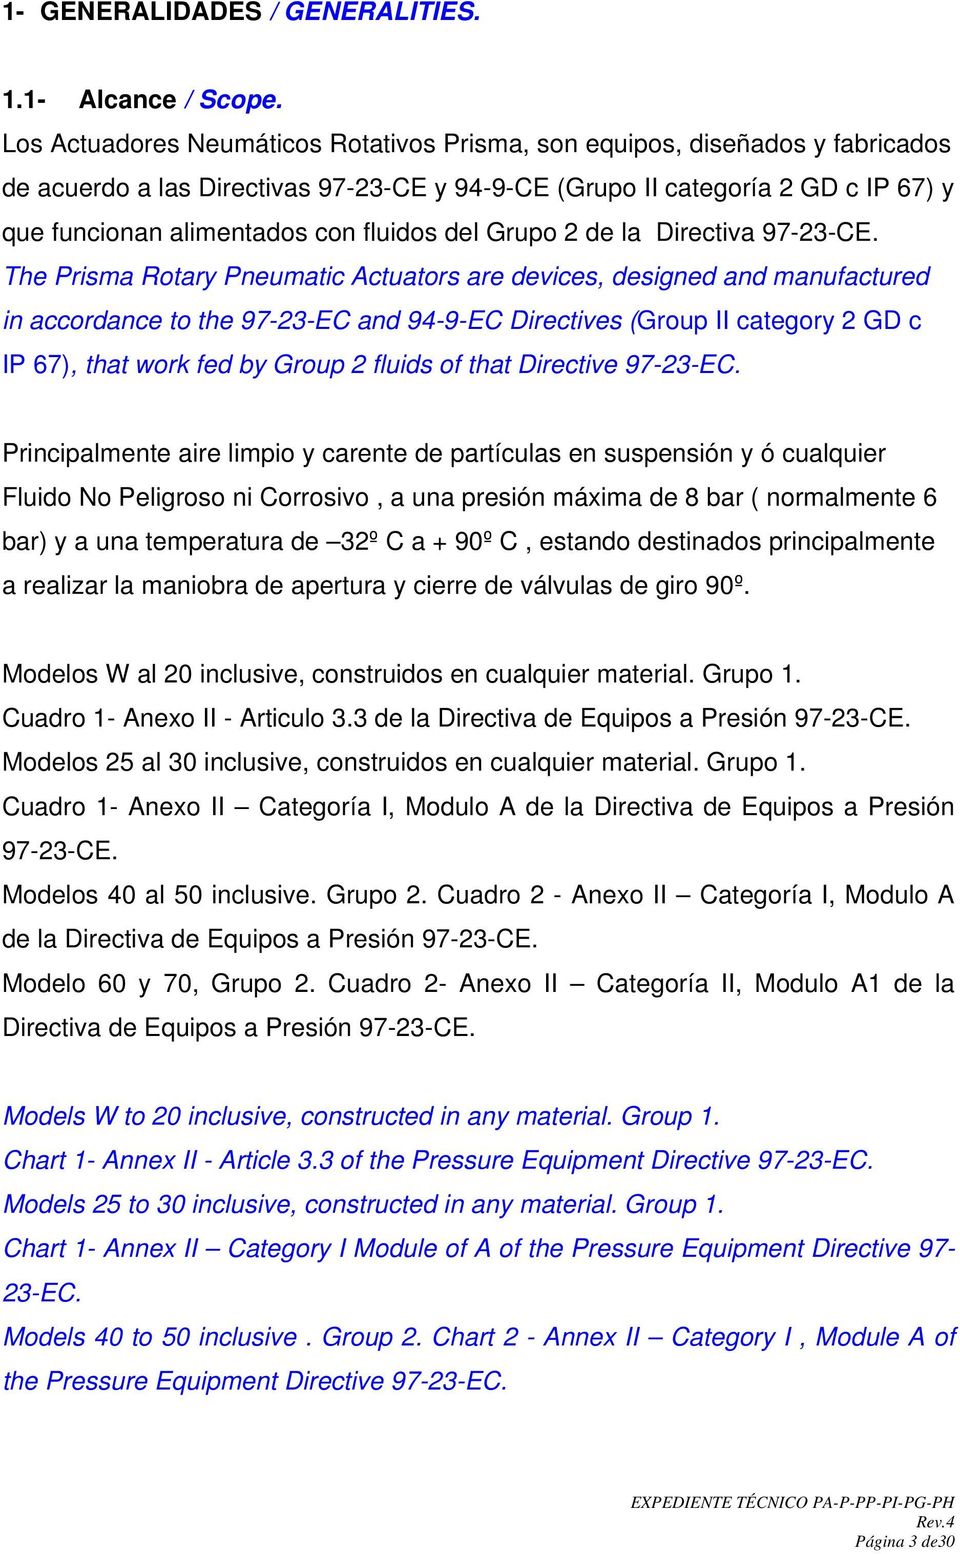 fluidos del Grupo 2 de la Directiva 97-23-CE.